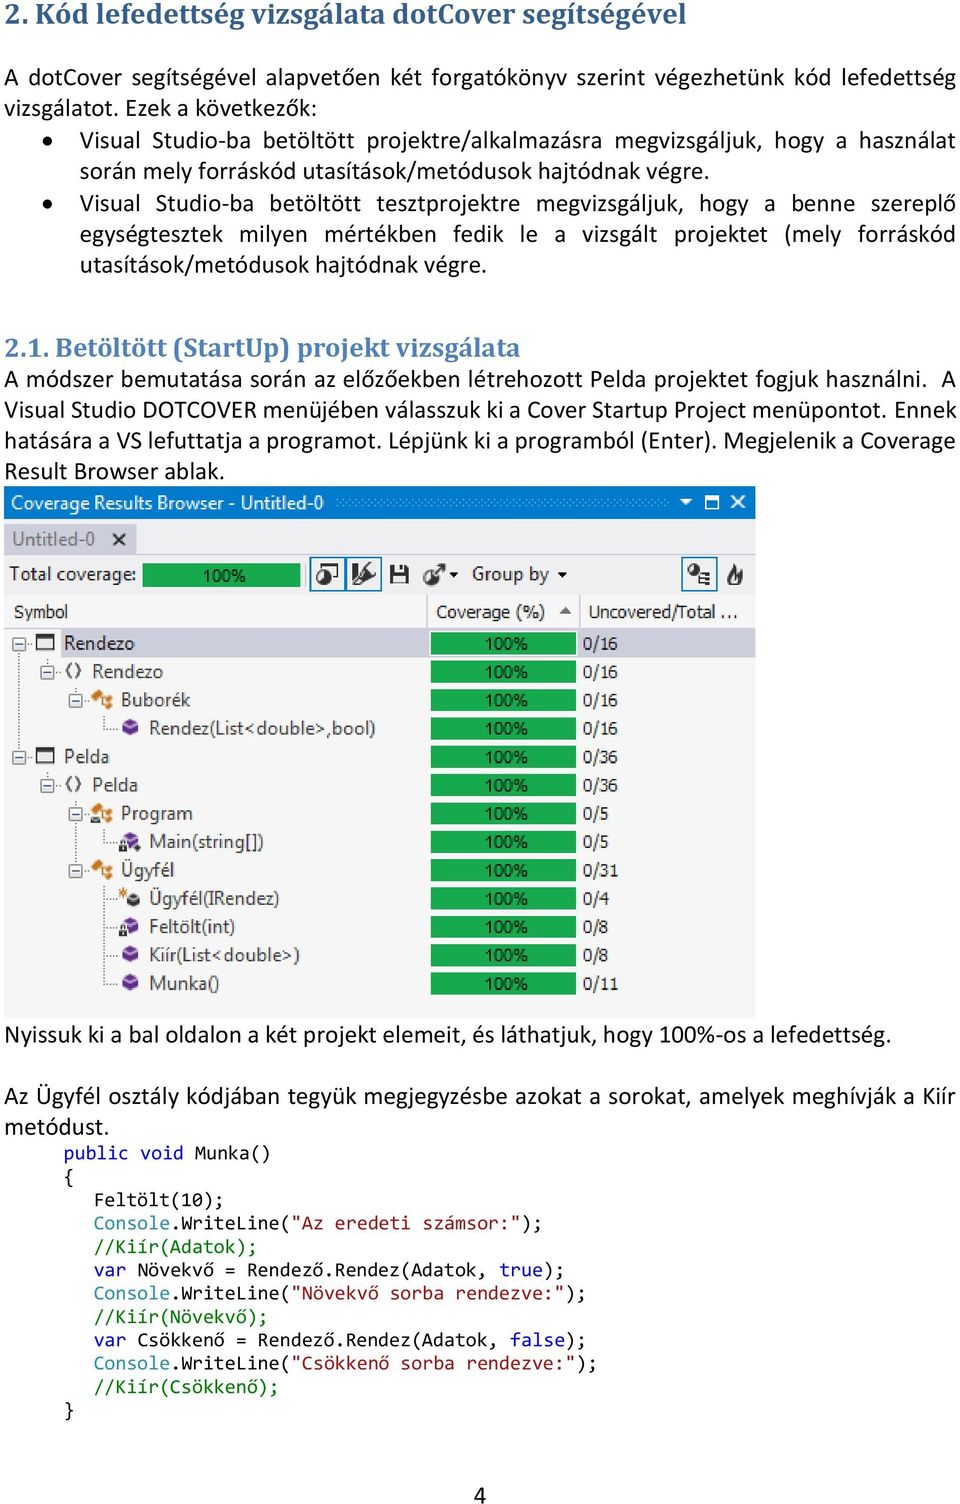 Visual Studio-ba betöltött tesztprojektre megvizsgáljuk, hogy a benne szereplő egységtesztek milyen mértékben fedik le a vizsgált projektet (mely forráskód utasítások/metódusok hajtódnak végre. 2.1.